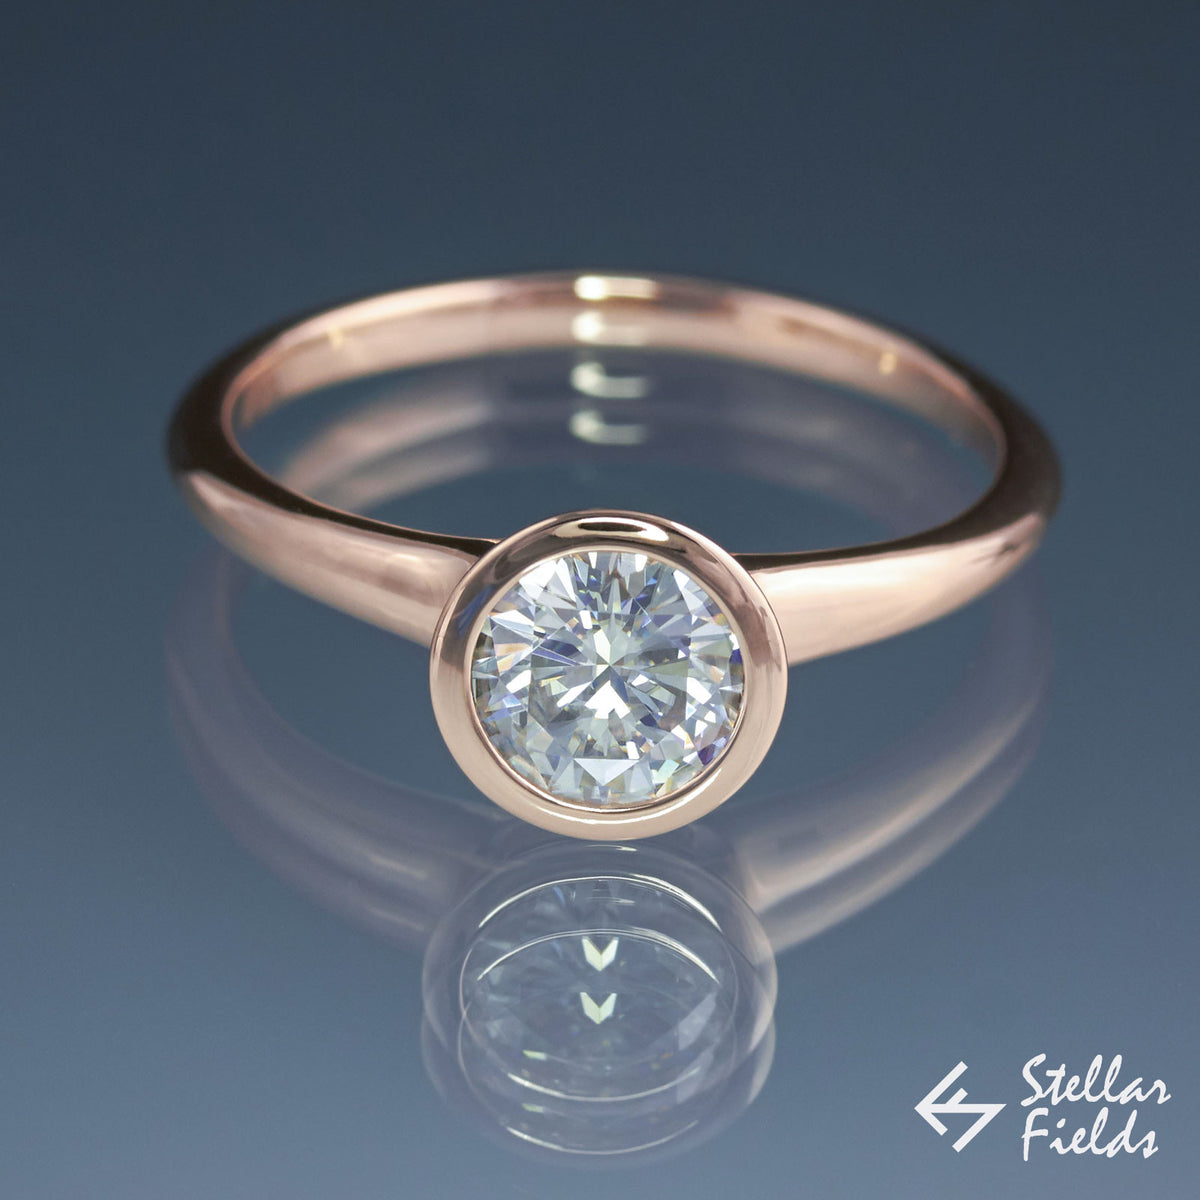 6.5mm Forever One ™ Moissanite Bezel Set Engagement Ring Stellar Fields Jewelry